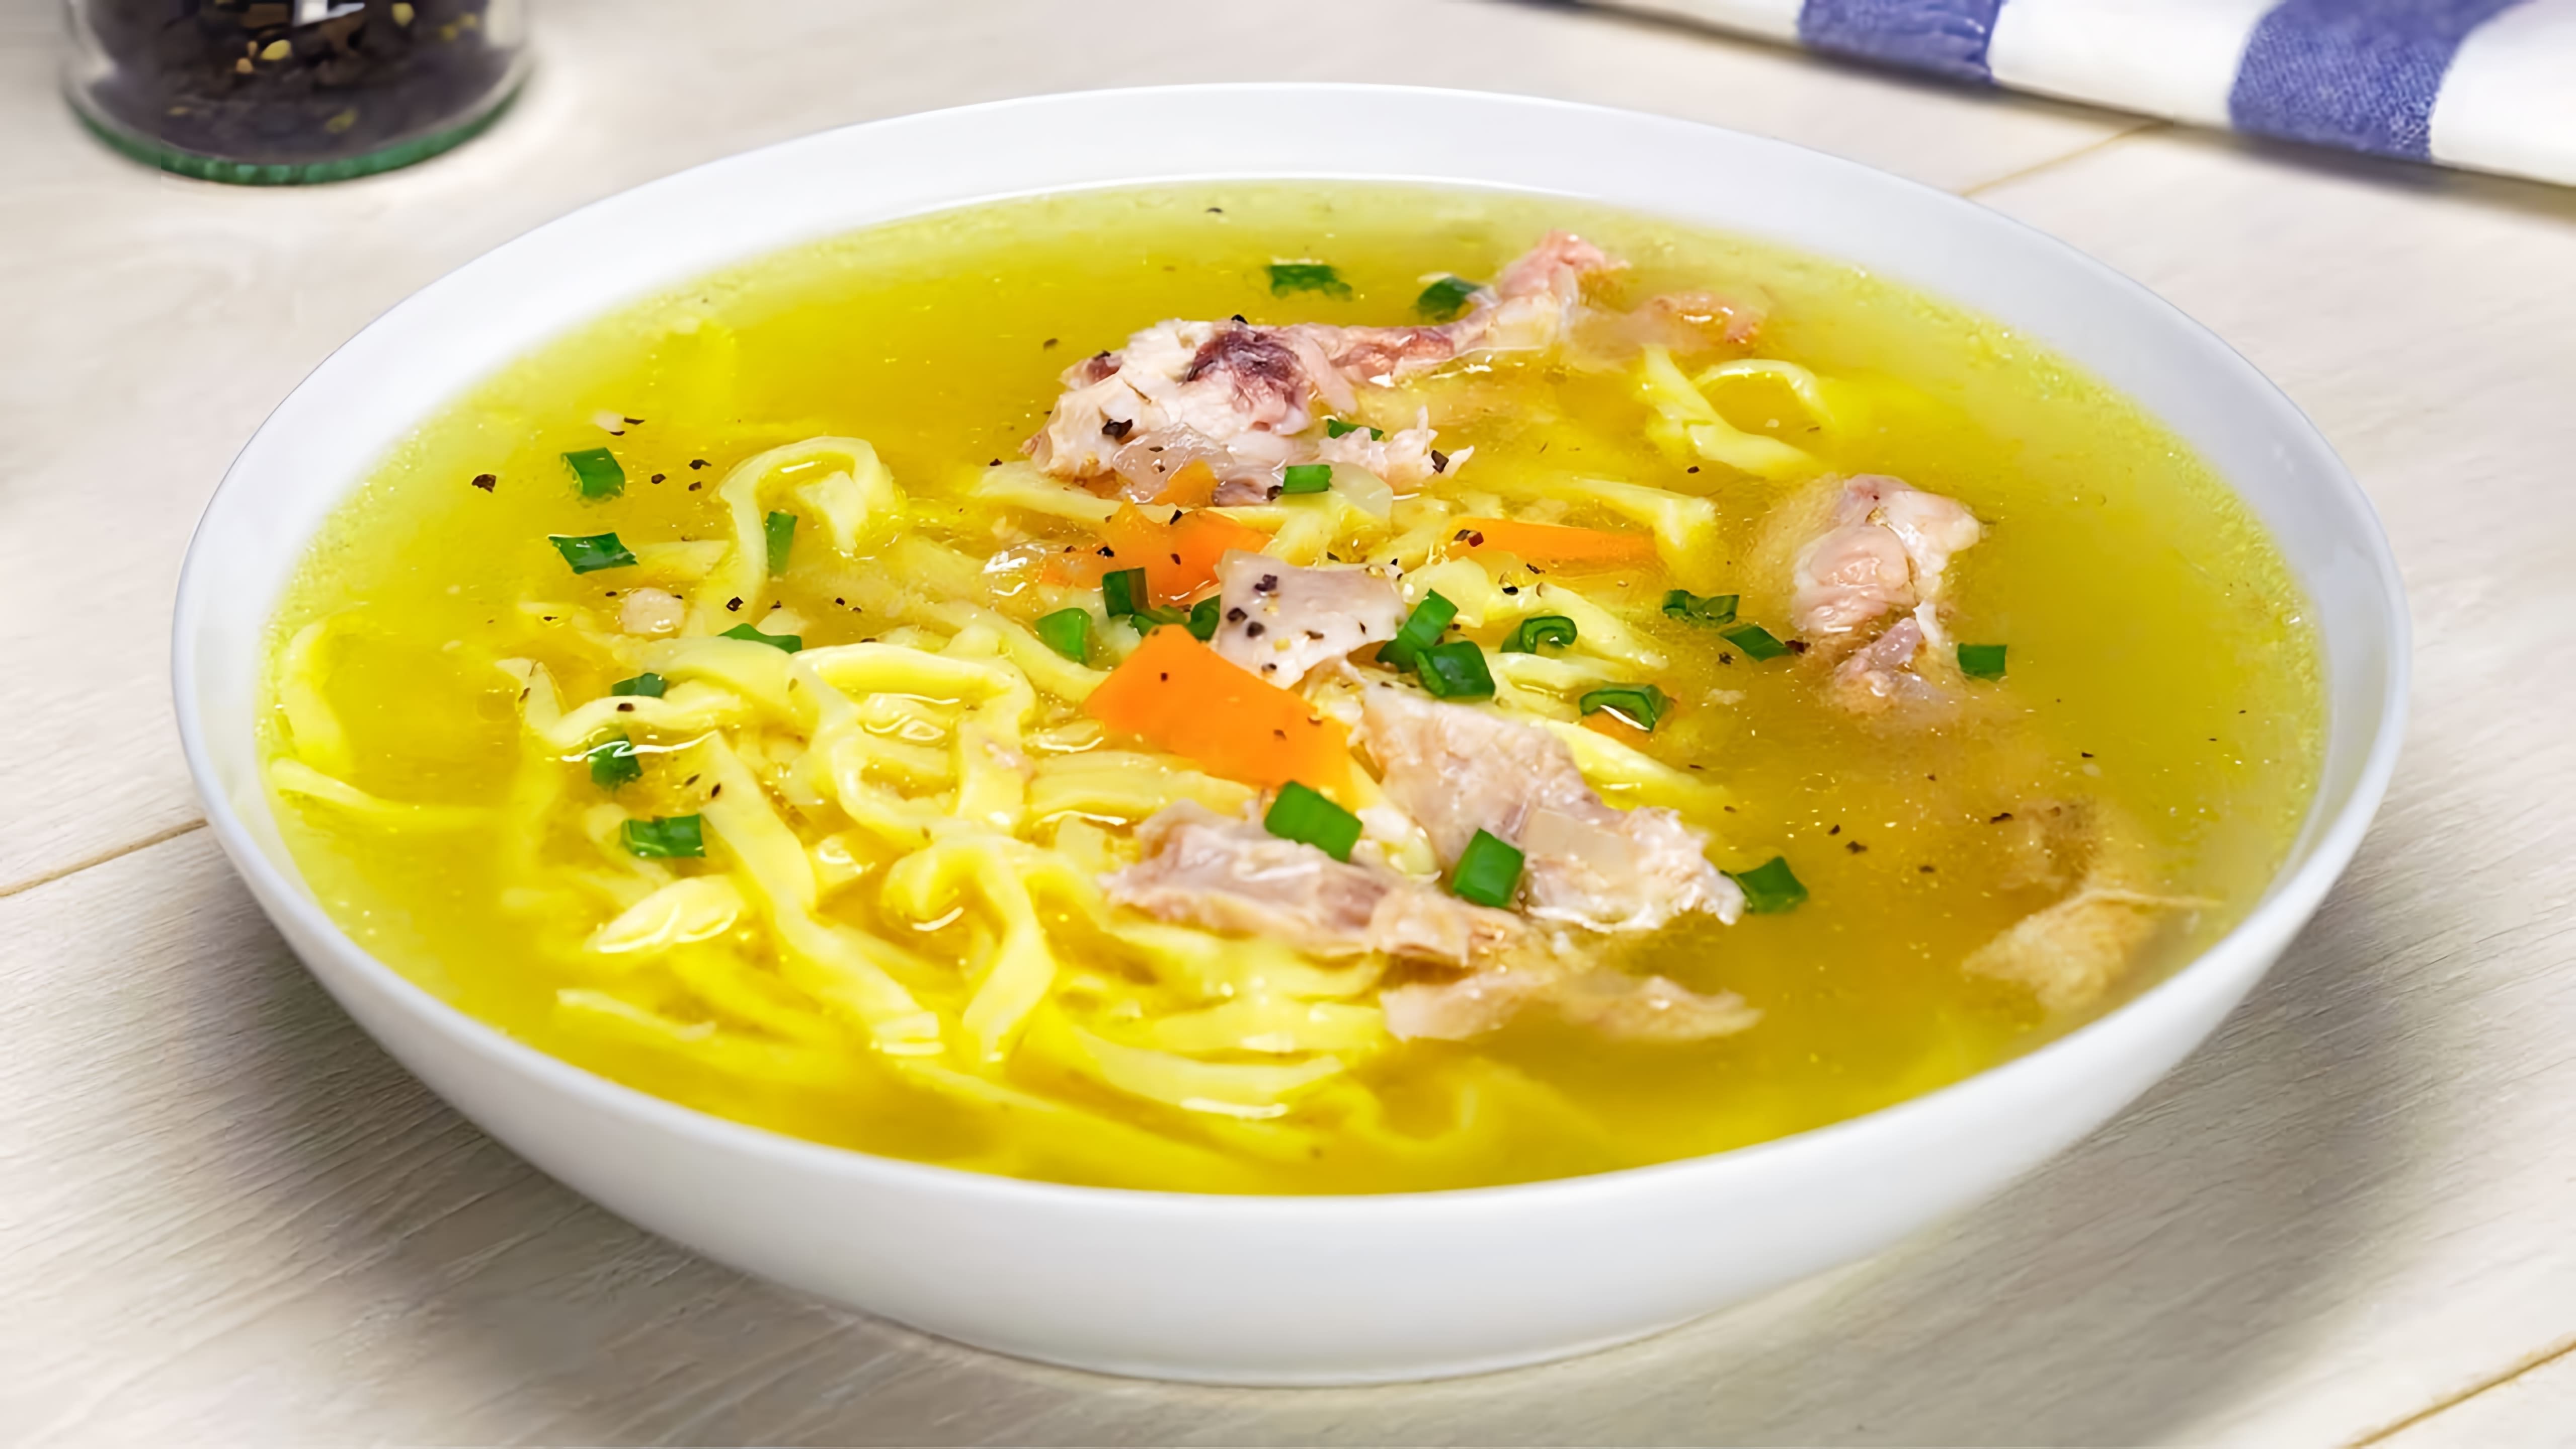 В этом видео демонстрируется рецепт приготовления куриного супа с домашней лапшой